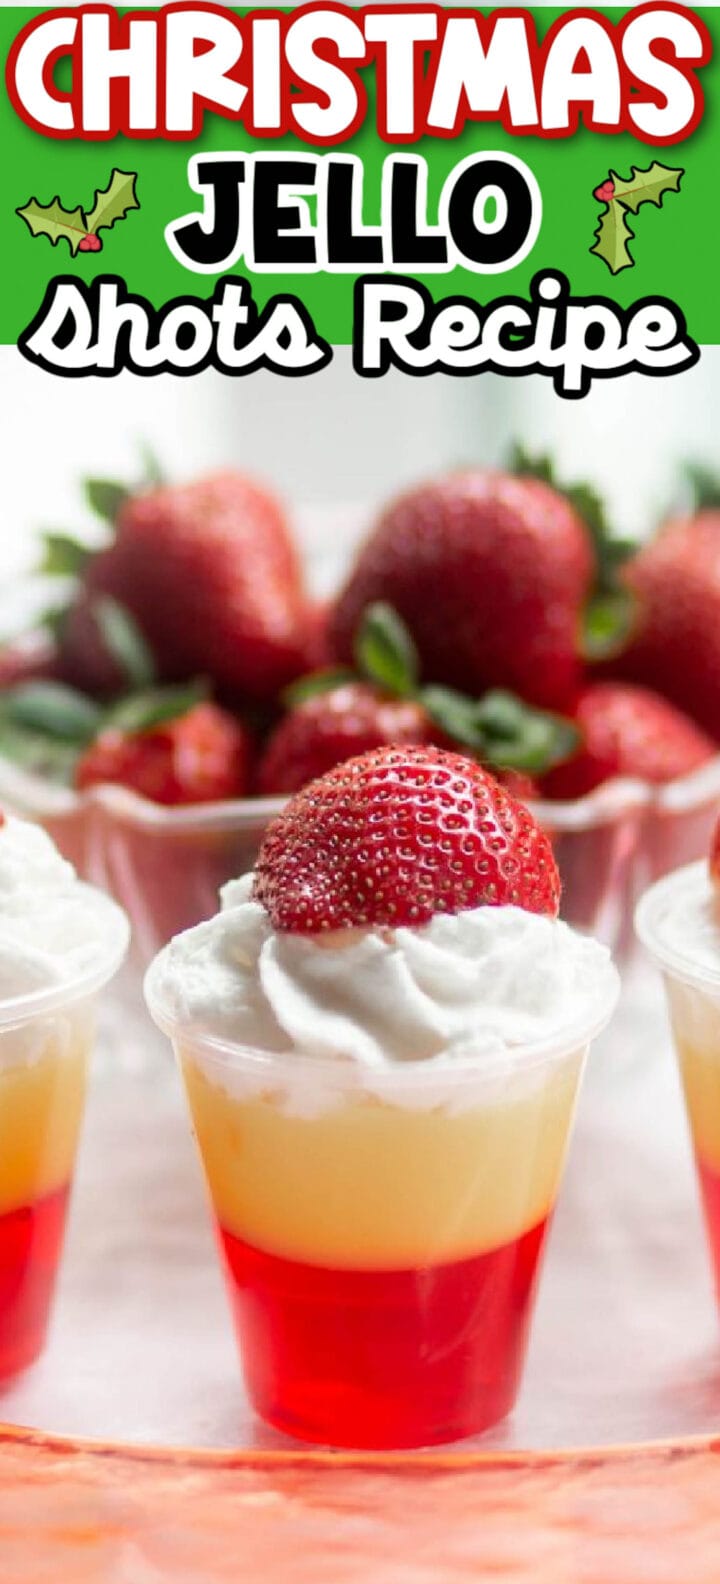 Strawberries and cream layered Christmas jello shots recipe.